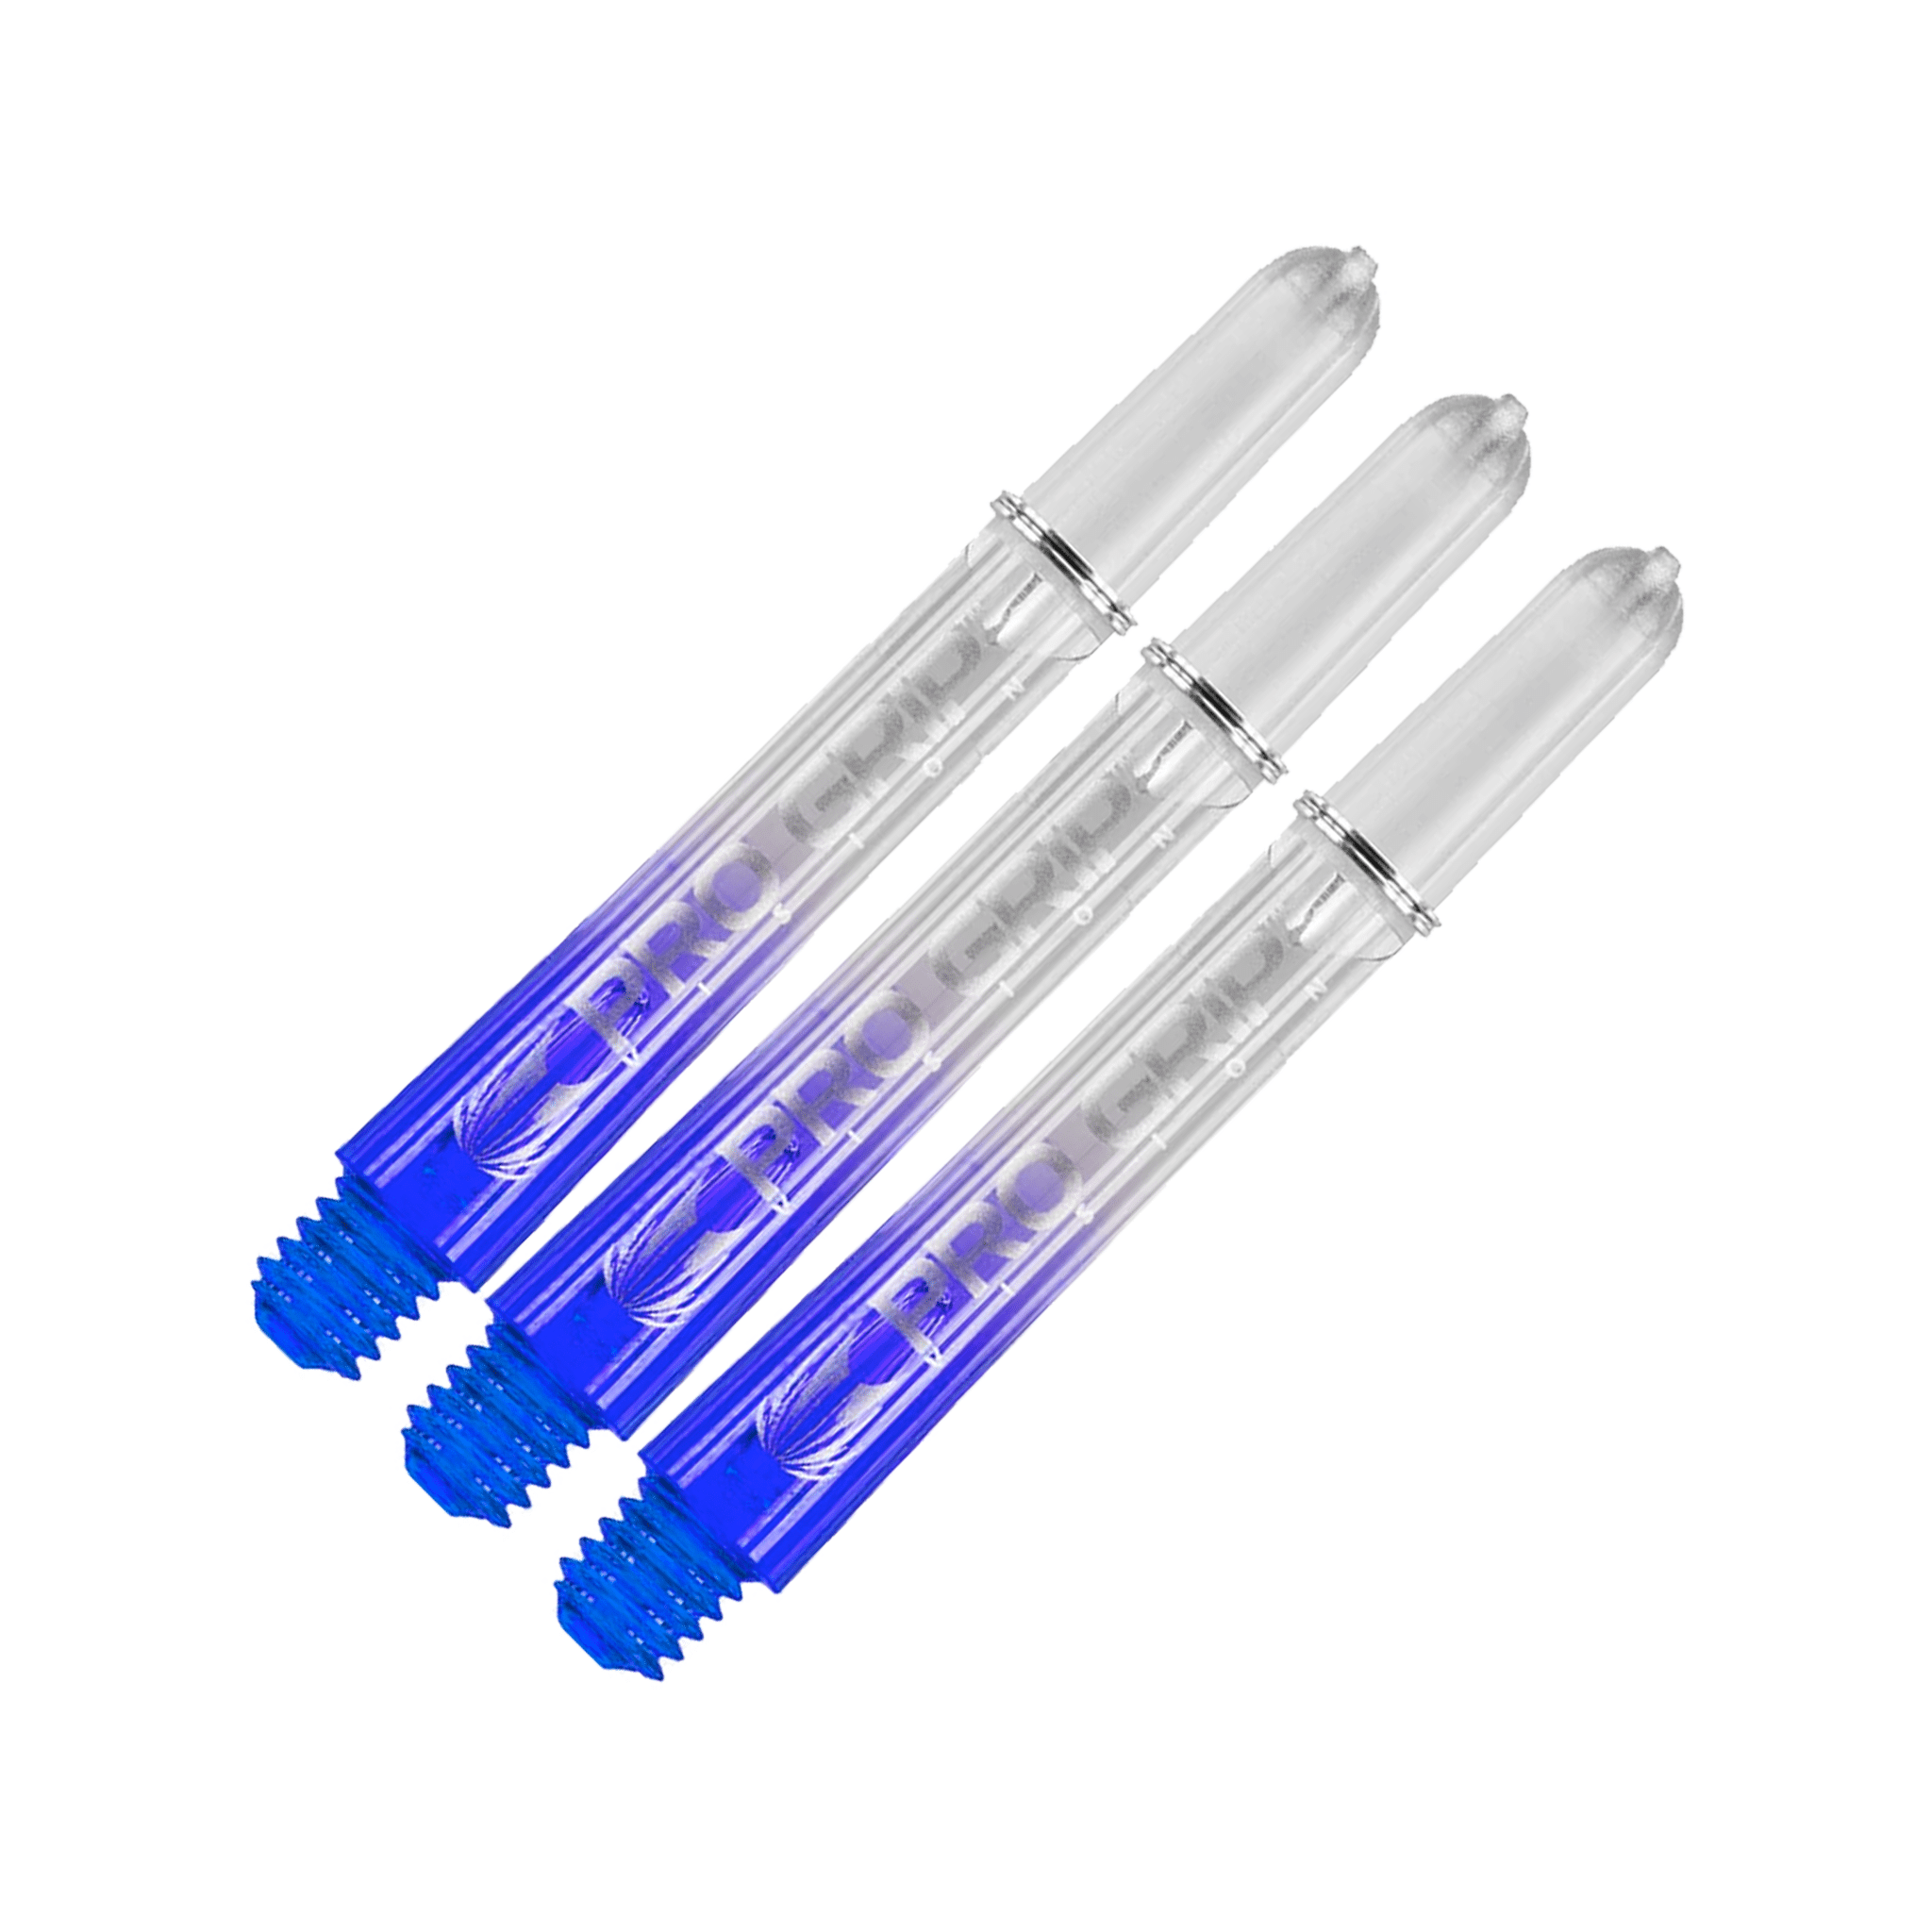 Target Pro Vision - Polycarbonate Dart Shafts Intermediate (41mm) / Blue Shafts